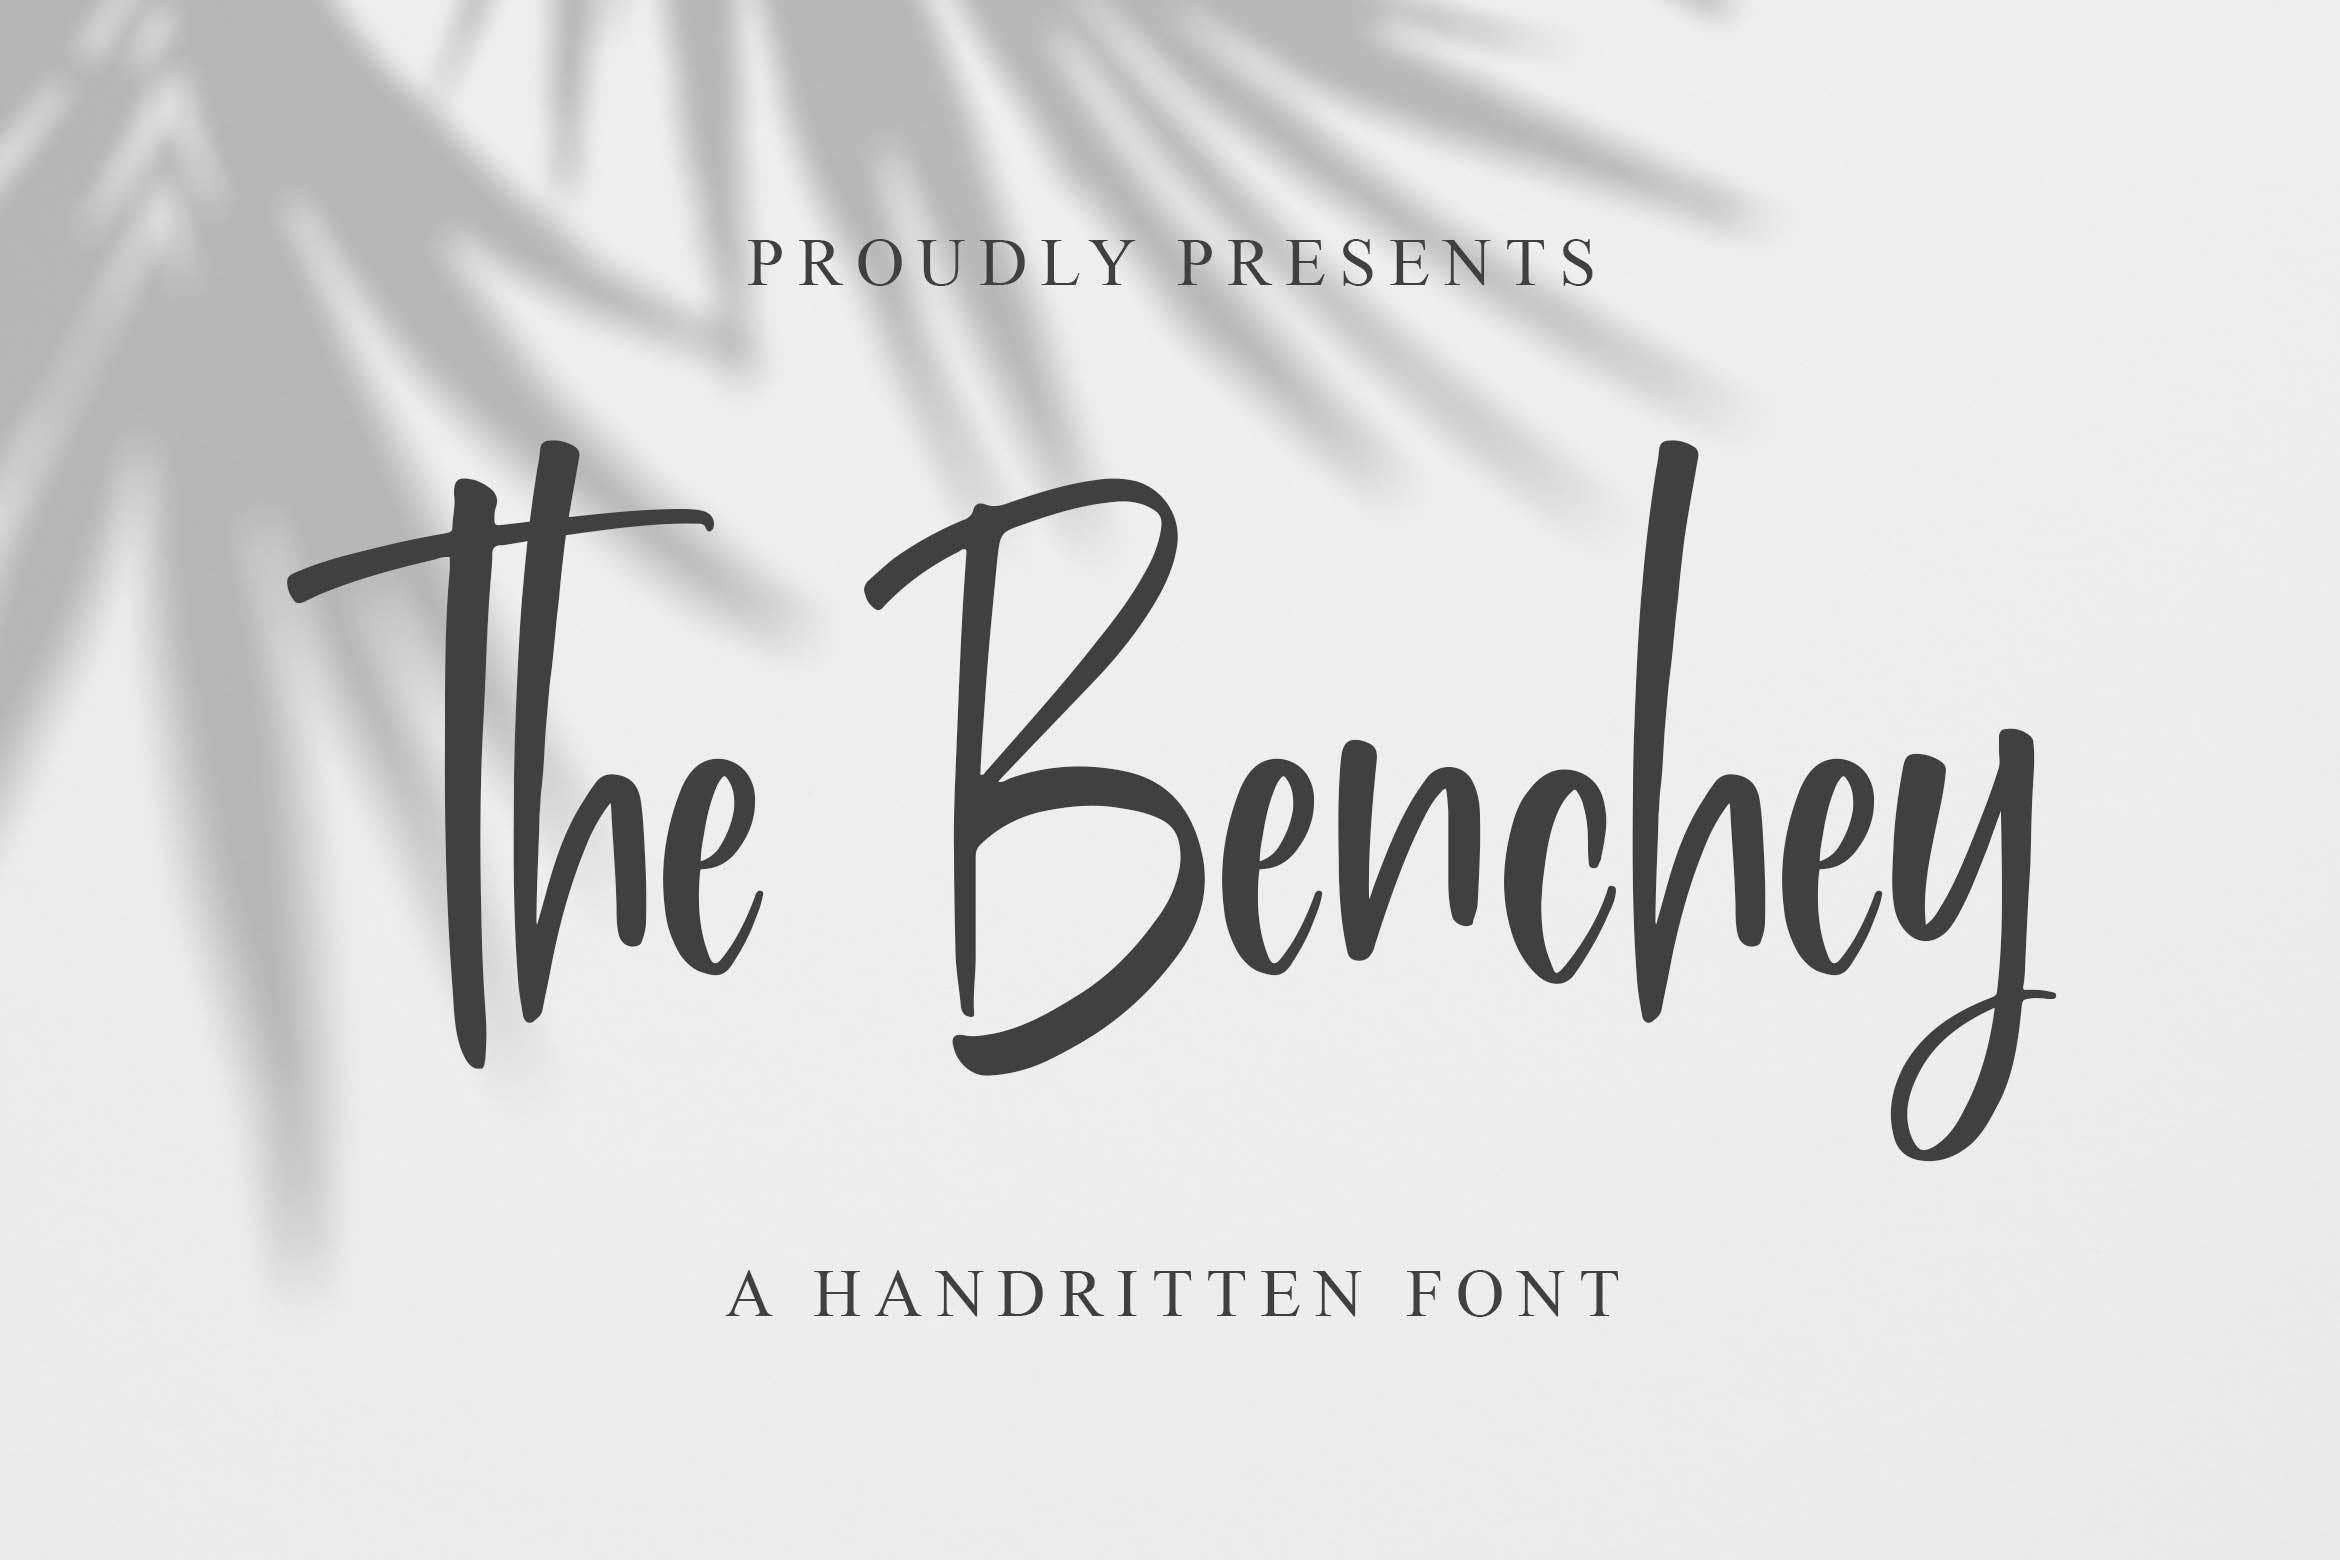 现代书法风格英文手写字体蚂蚁素材精选 Benchey – Handwritten Font插图